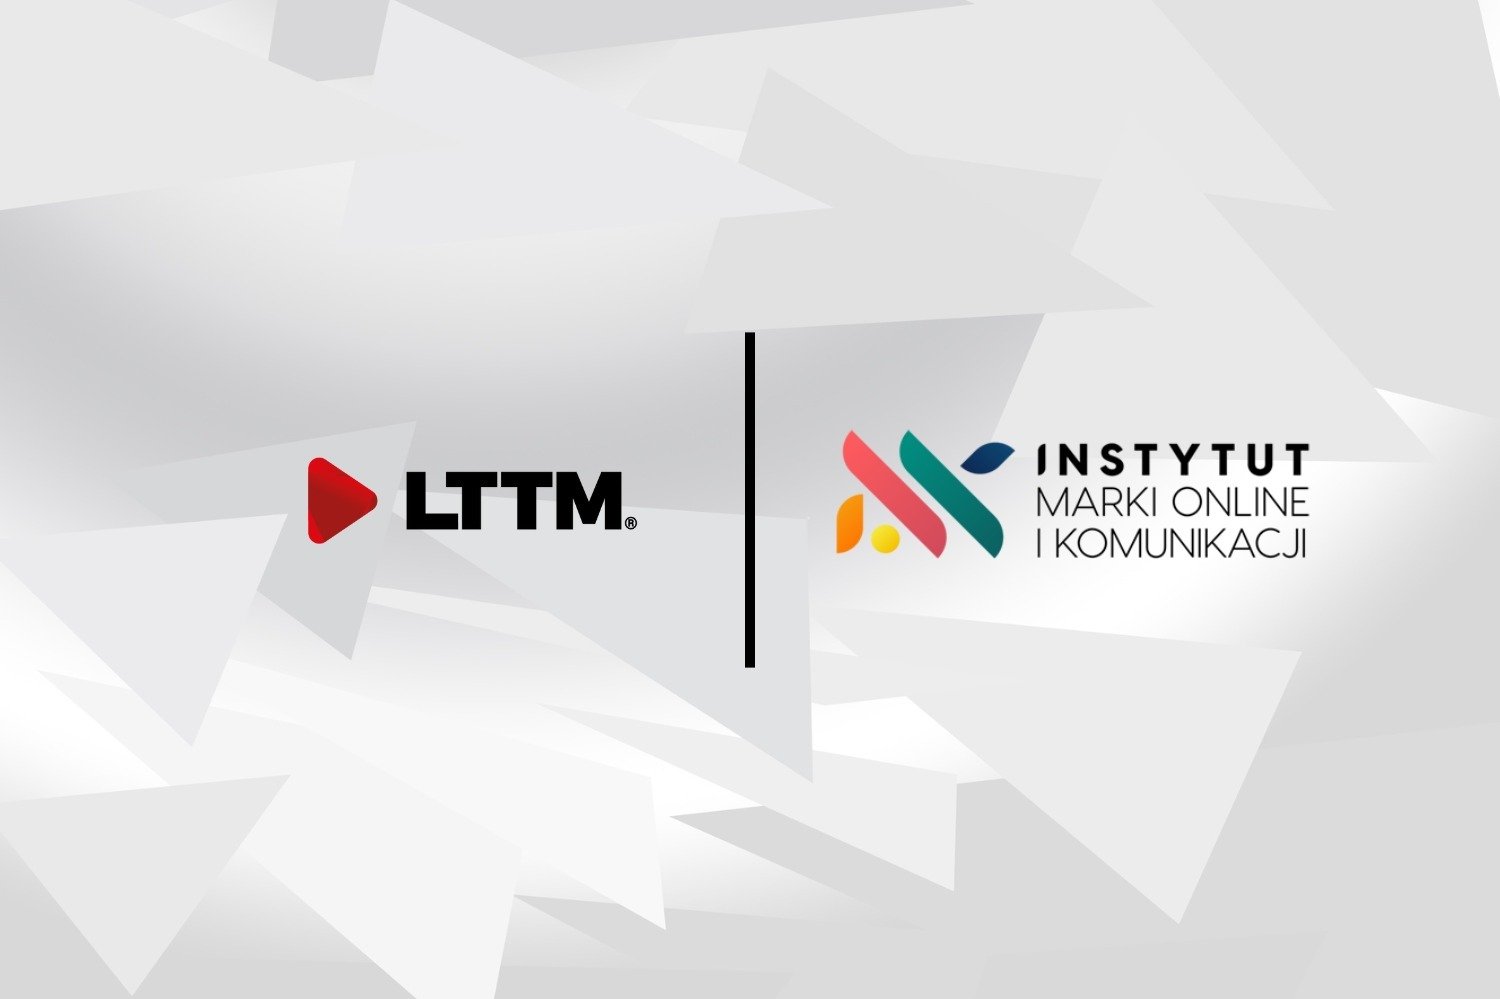 LTTM i IMOK tworzą oficjalnie zawód Influencer Managera